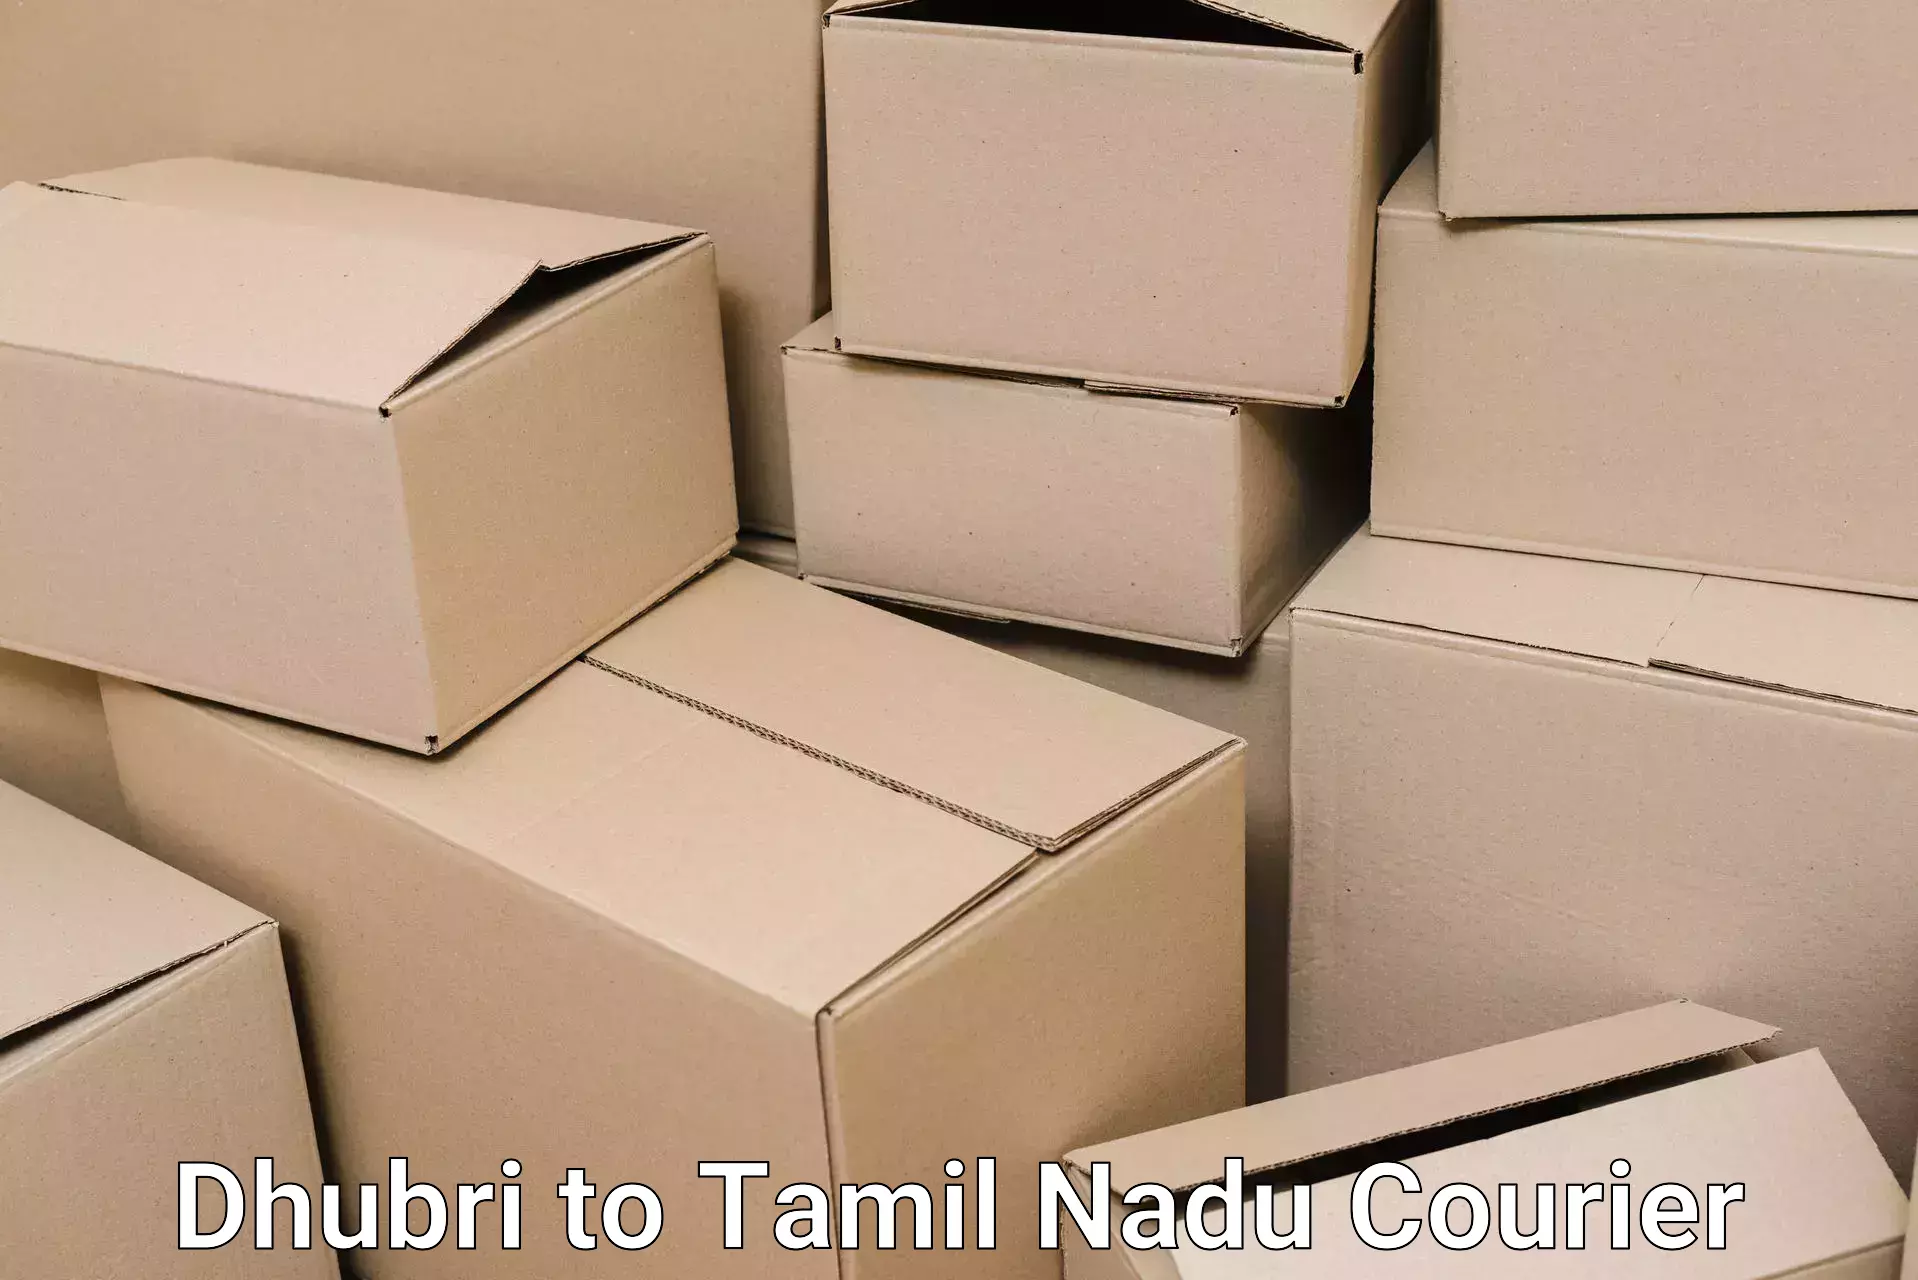 Quality moving company Dhubri to Tamil Nadu